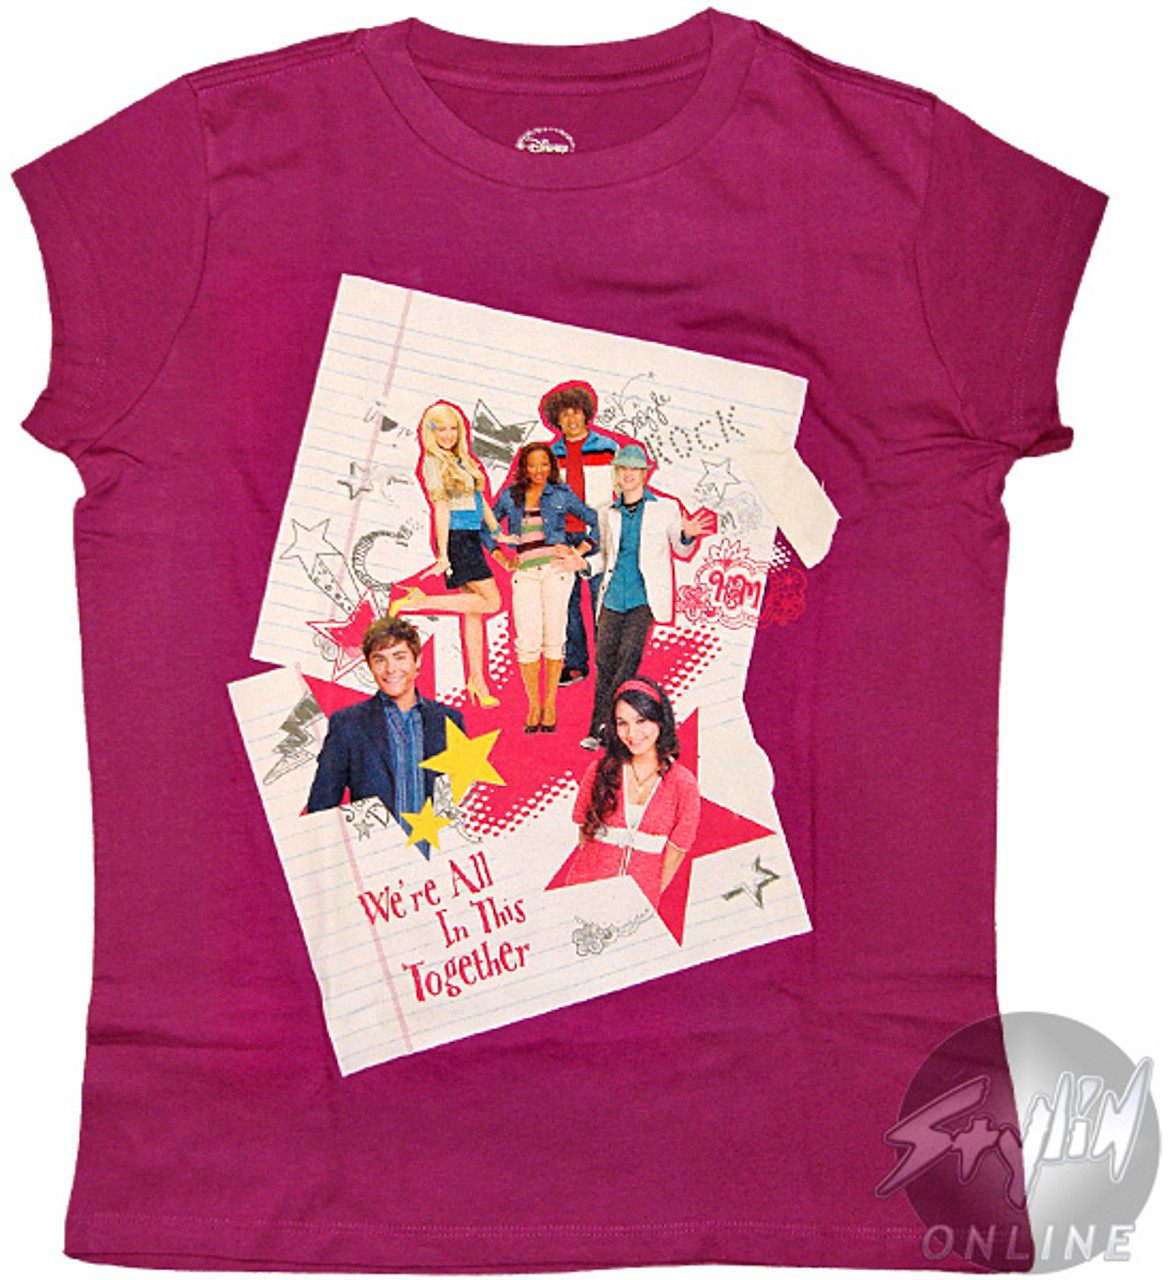 High School Musical 2 Group Tween T-Shirt